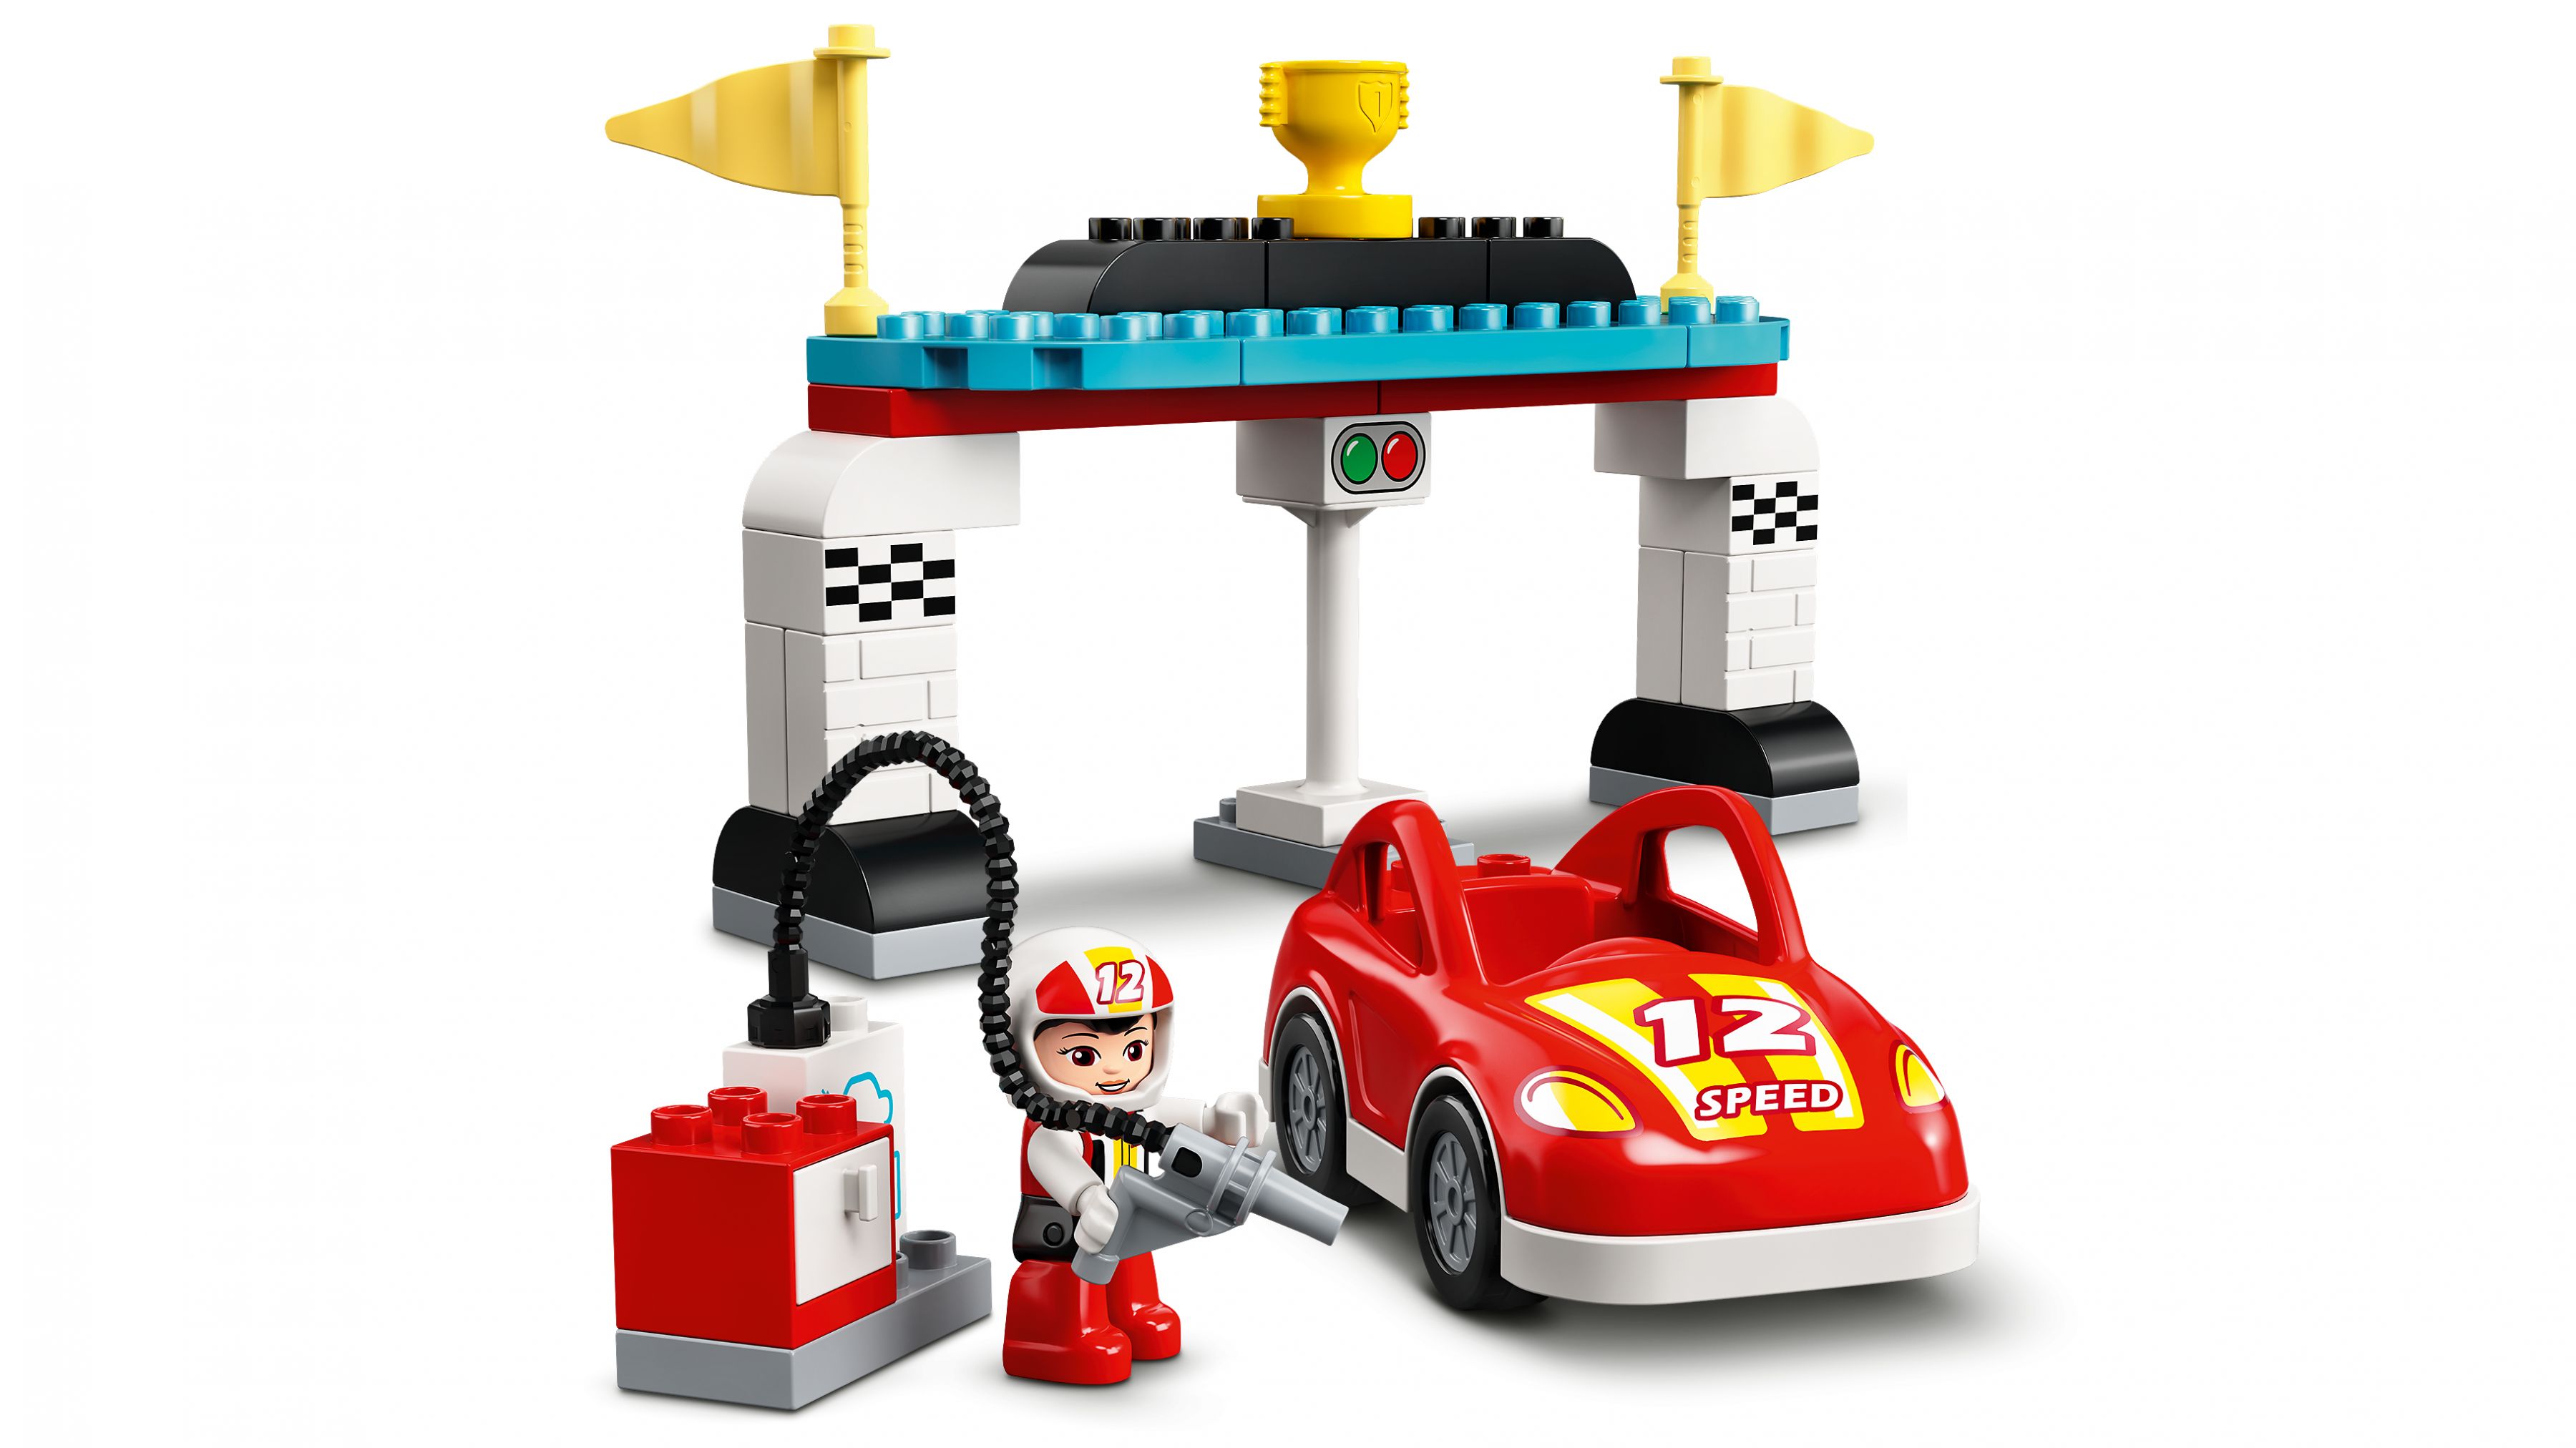 LEGO Duplo 10947 Rennwagen LEGO_10947_web_sec05_nobg.jpg